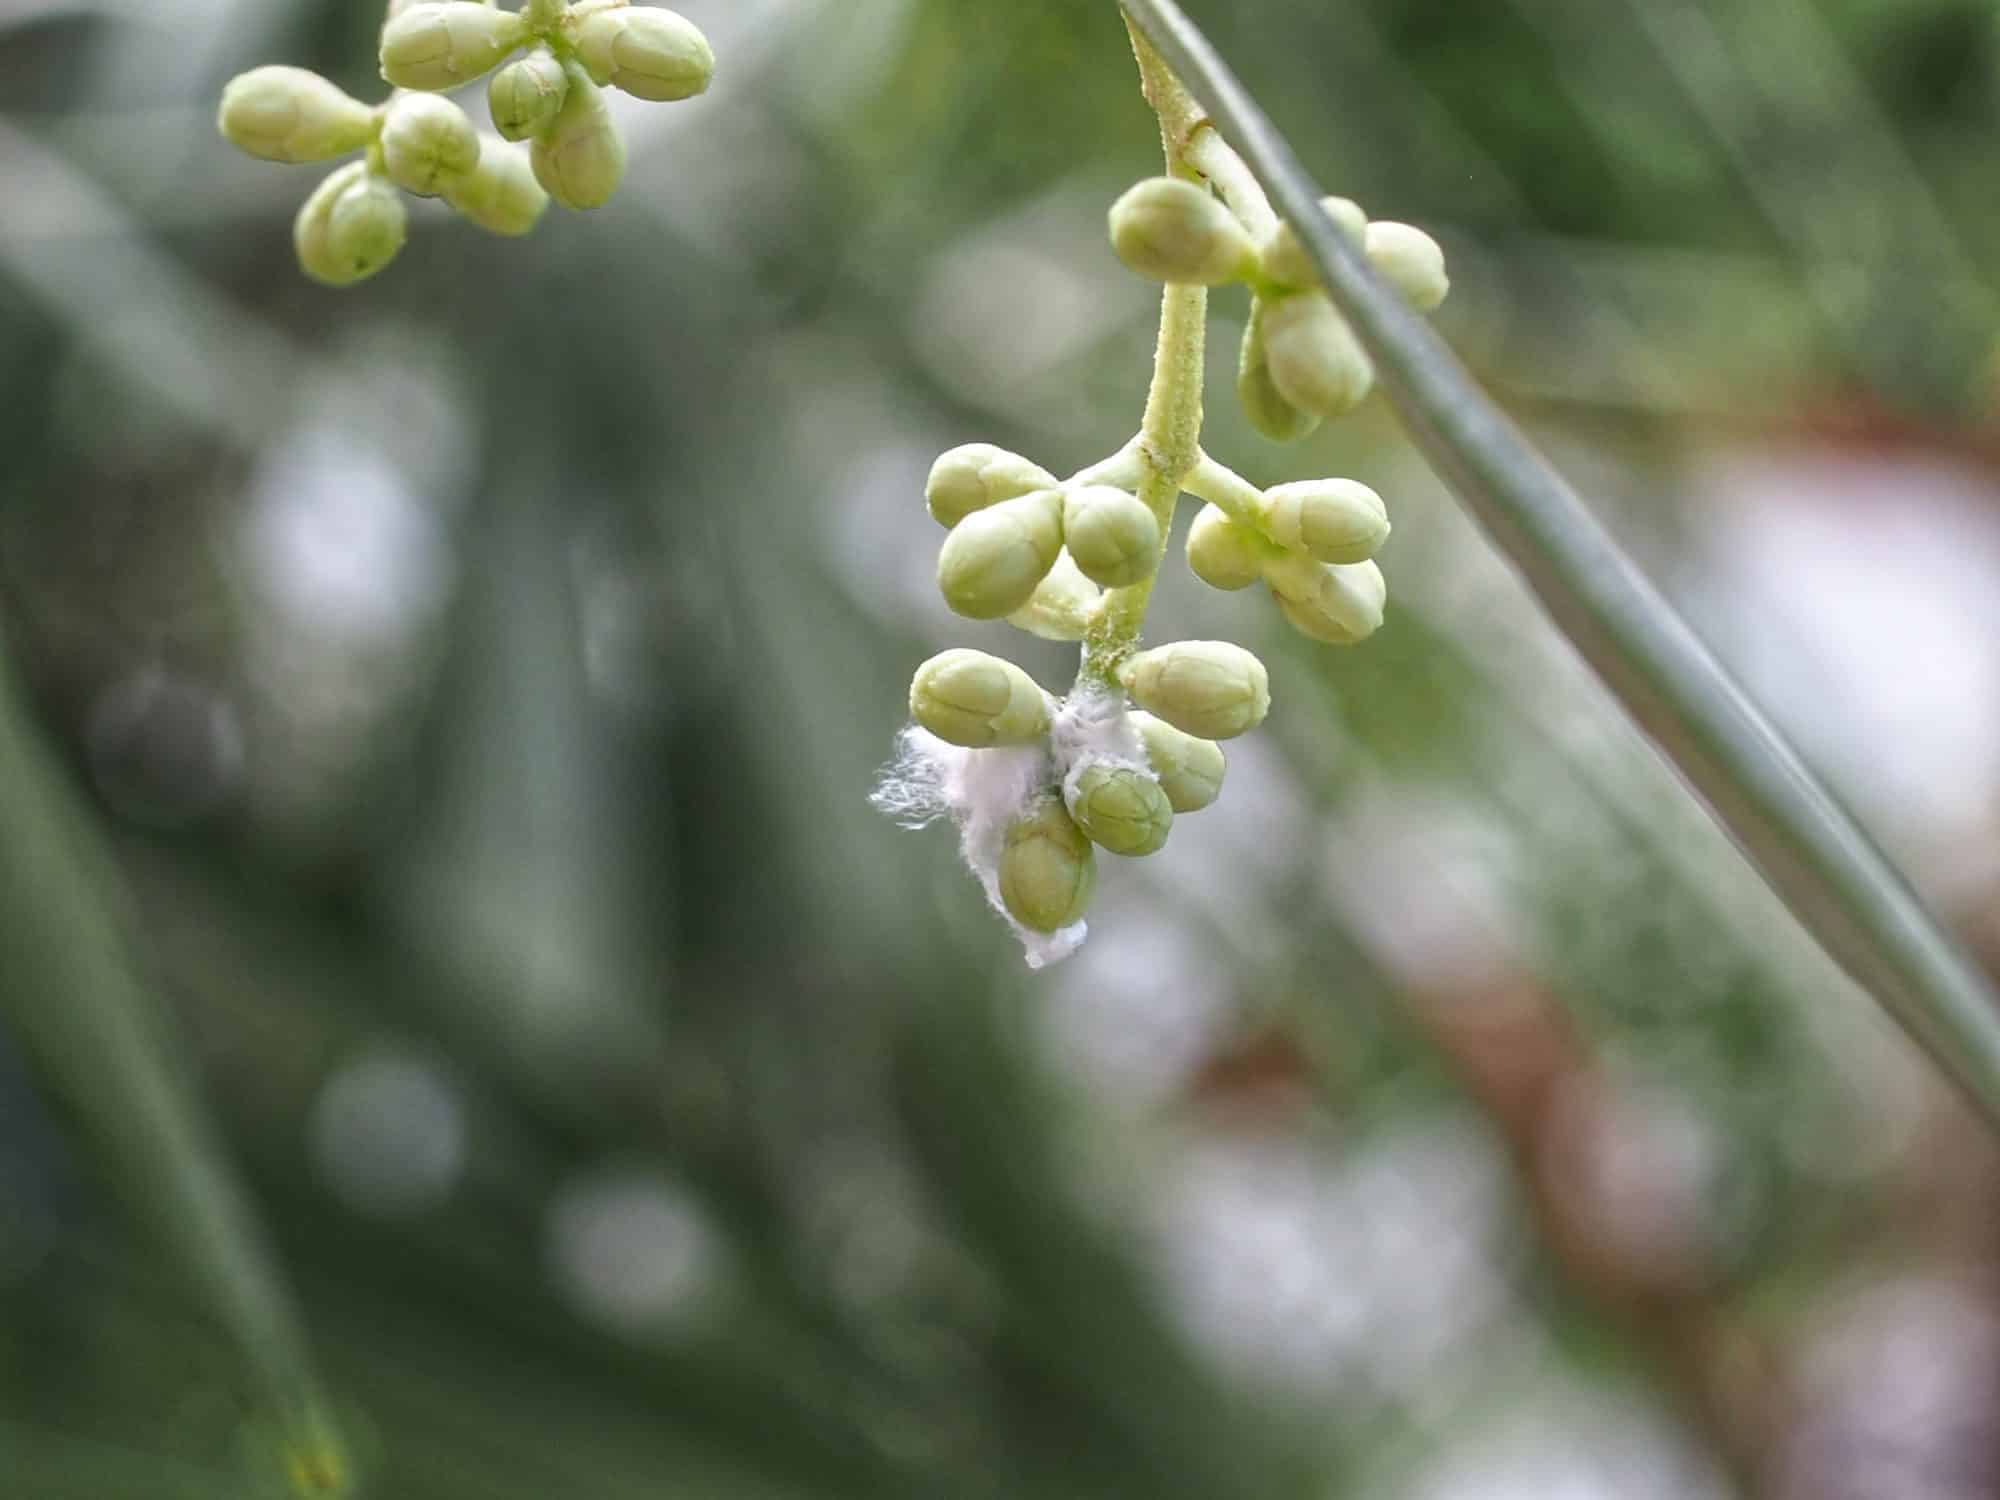 Euphyllura olivina (Schädlingsbefall)